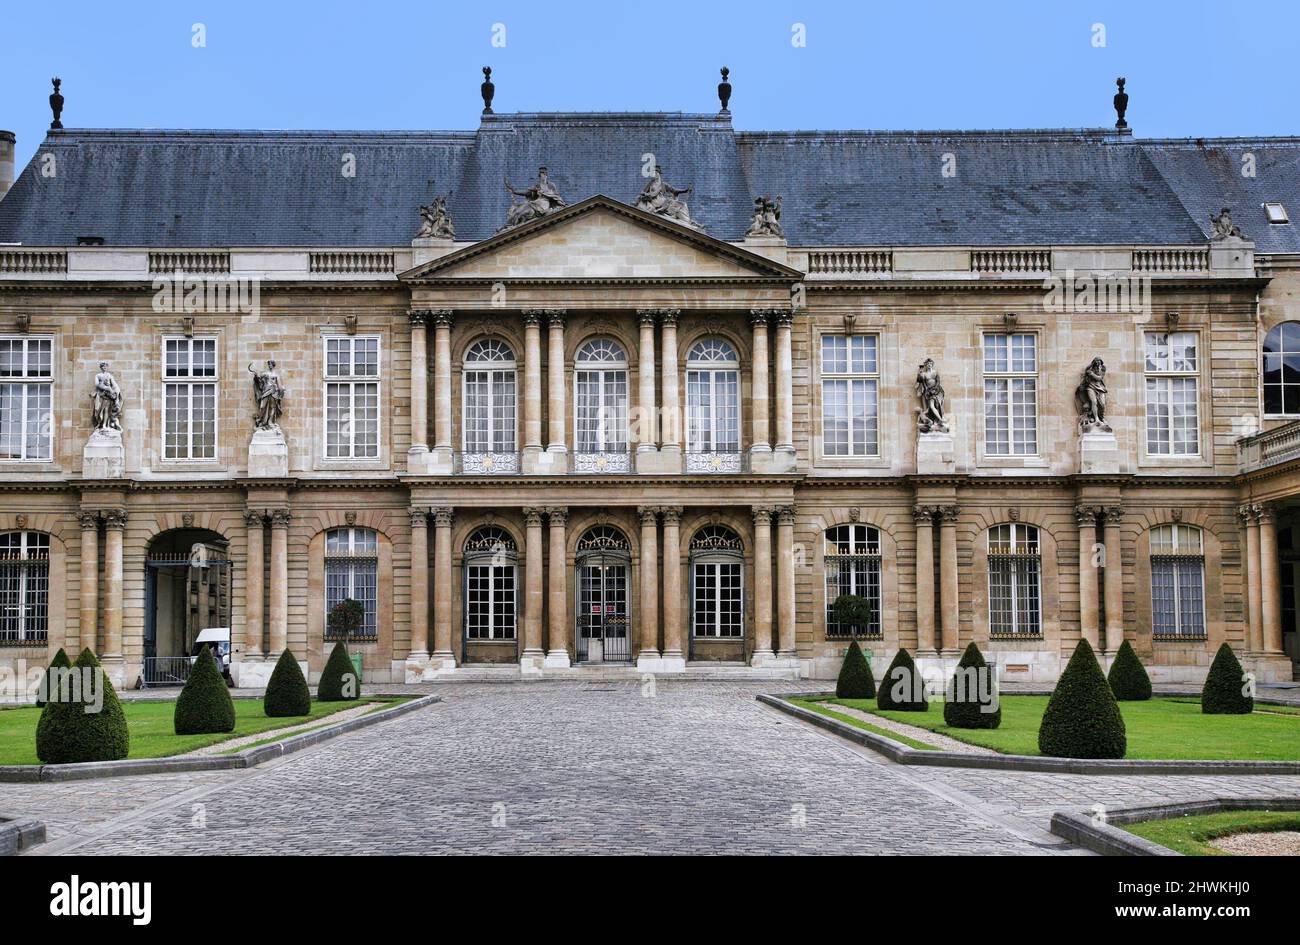 Paris, France : façade baroque ornée du musée des Archives nationales françaises dans le quartier du Marais, dans le palais Soubise datant du 18th siècle Banque D'Images